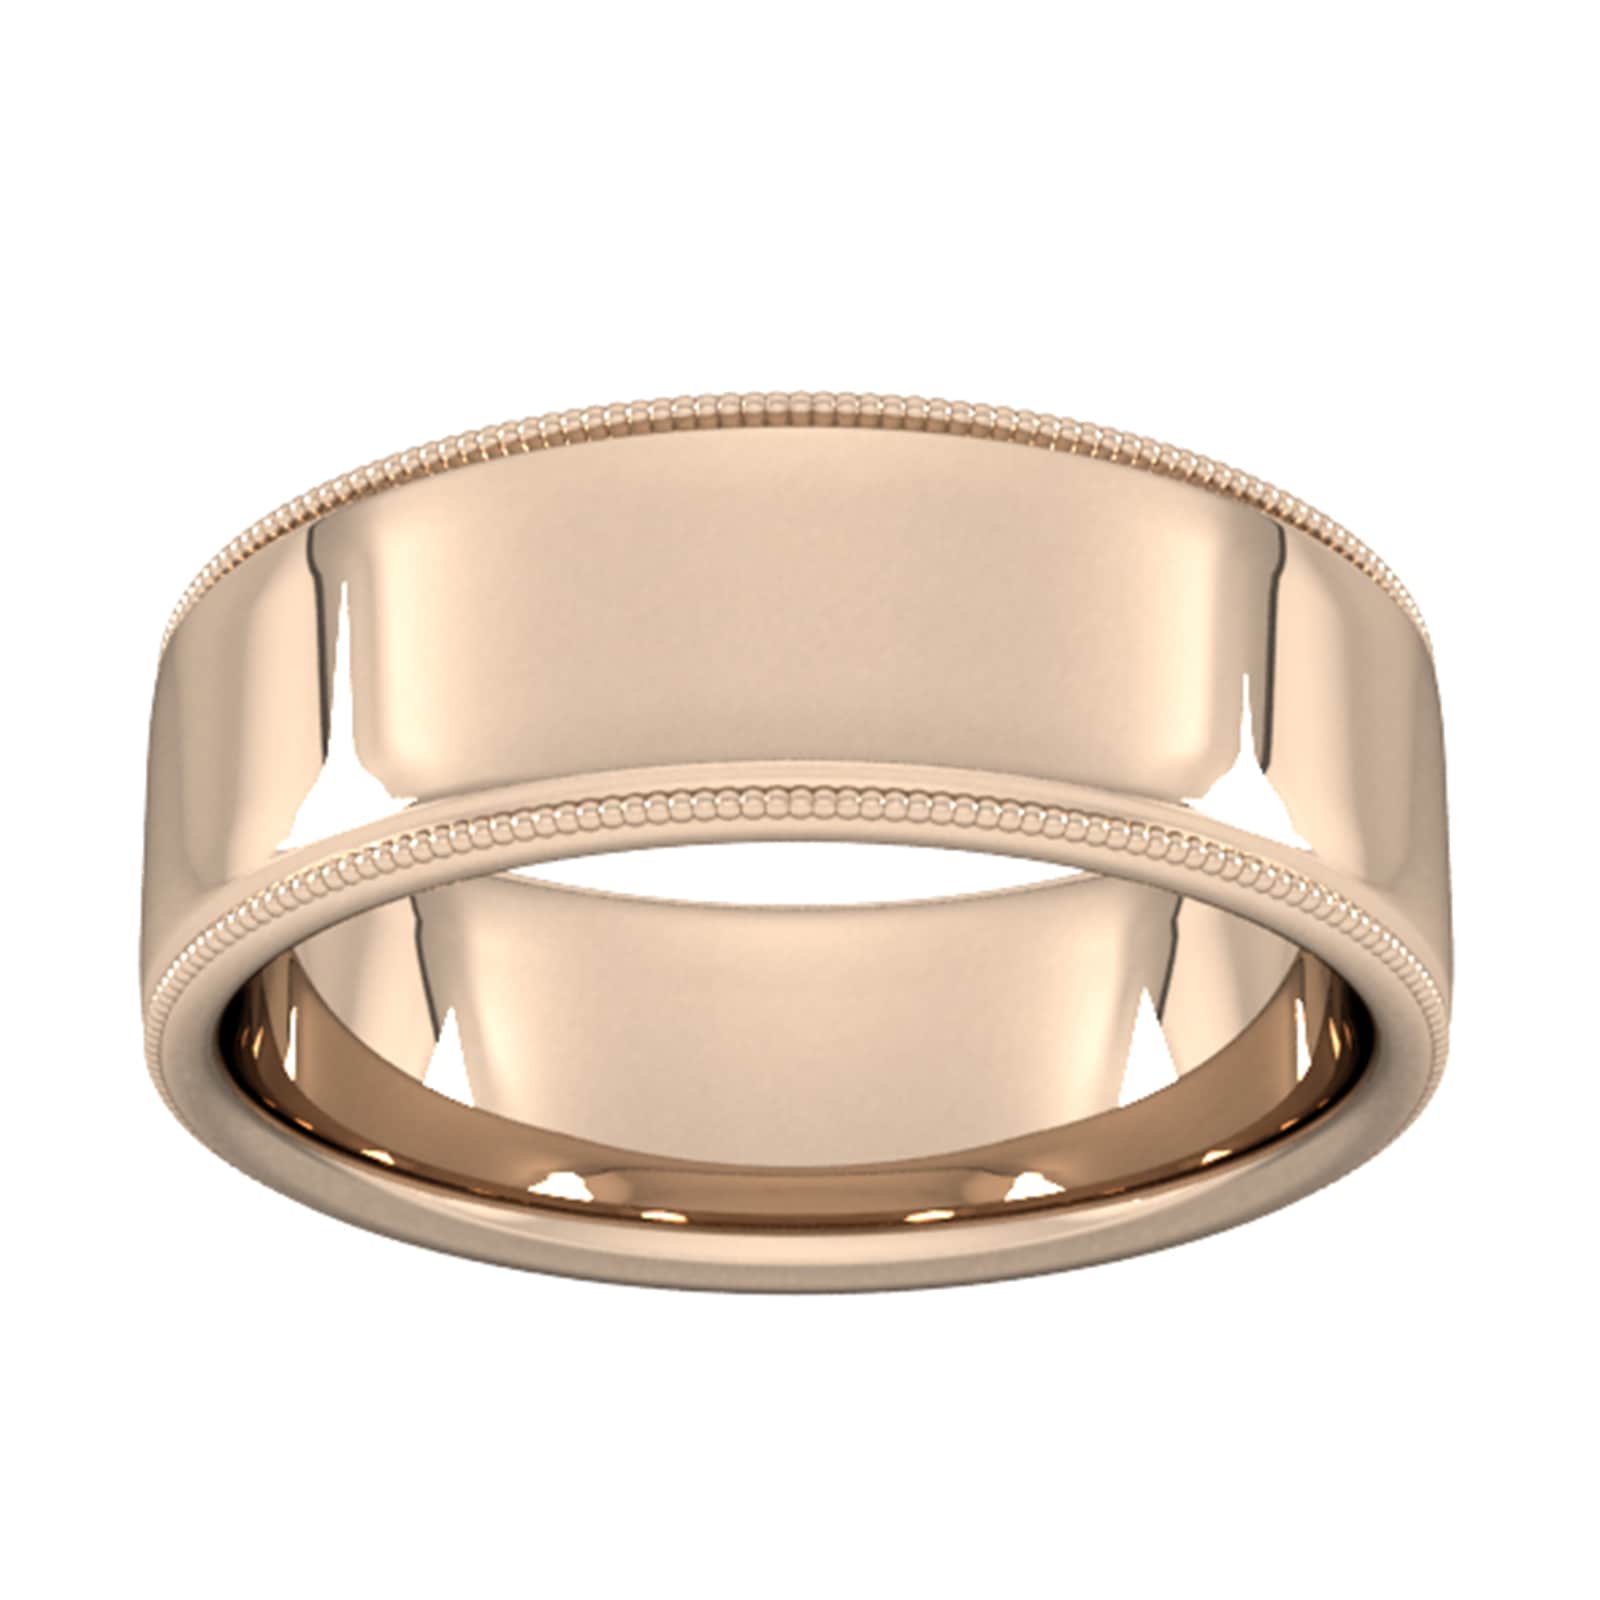 8mm Slight Court Heavy Milgrain Edge Wedding Ring In 9 Carat Rose Gold - Ring Size K